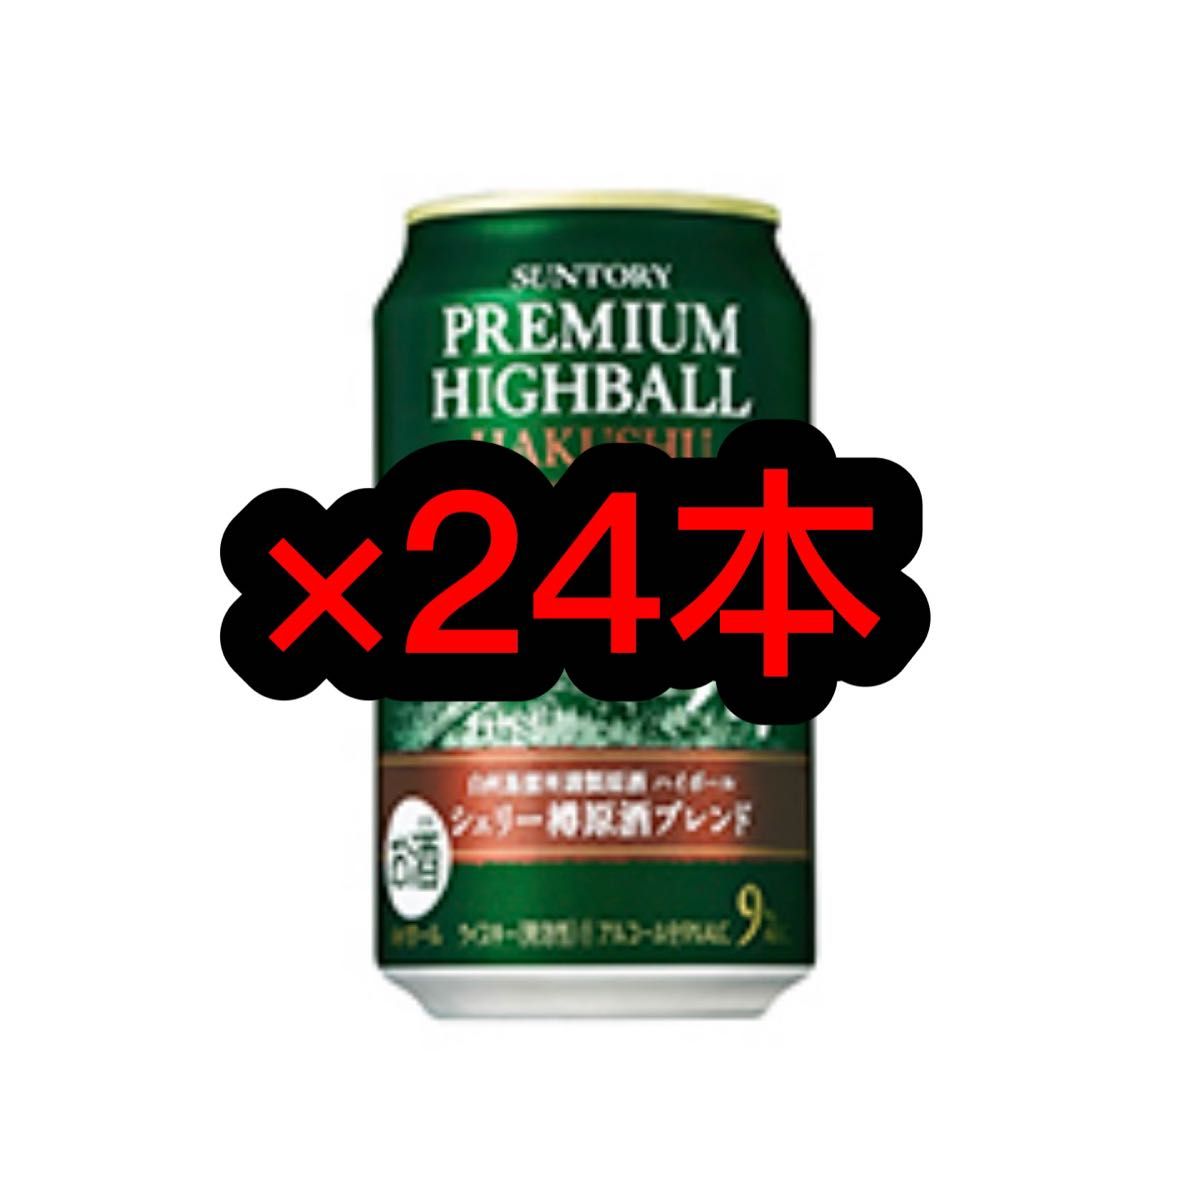 白州ハイボール缶 シェリー樽原酒ブレンド ×24 - 酒